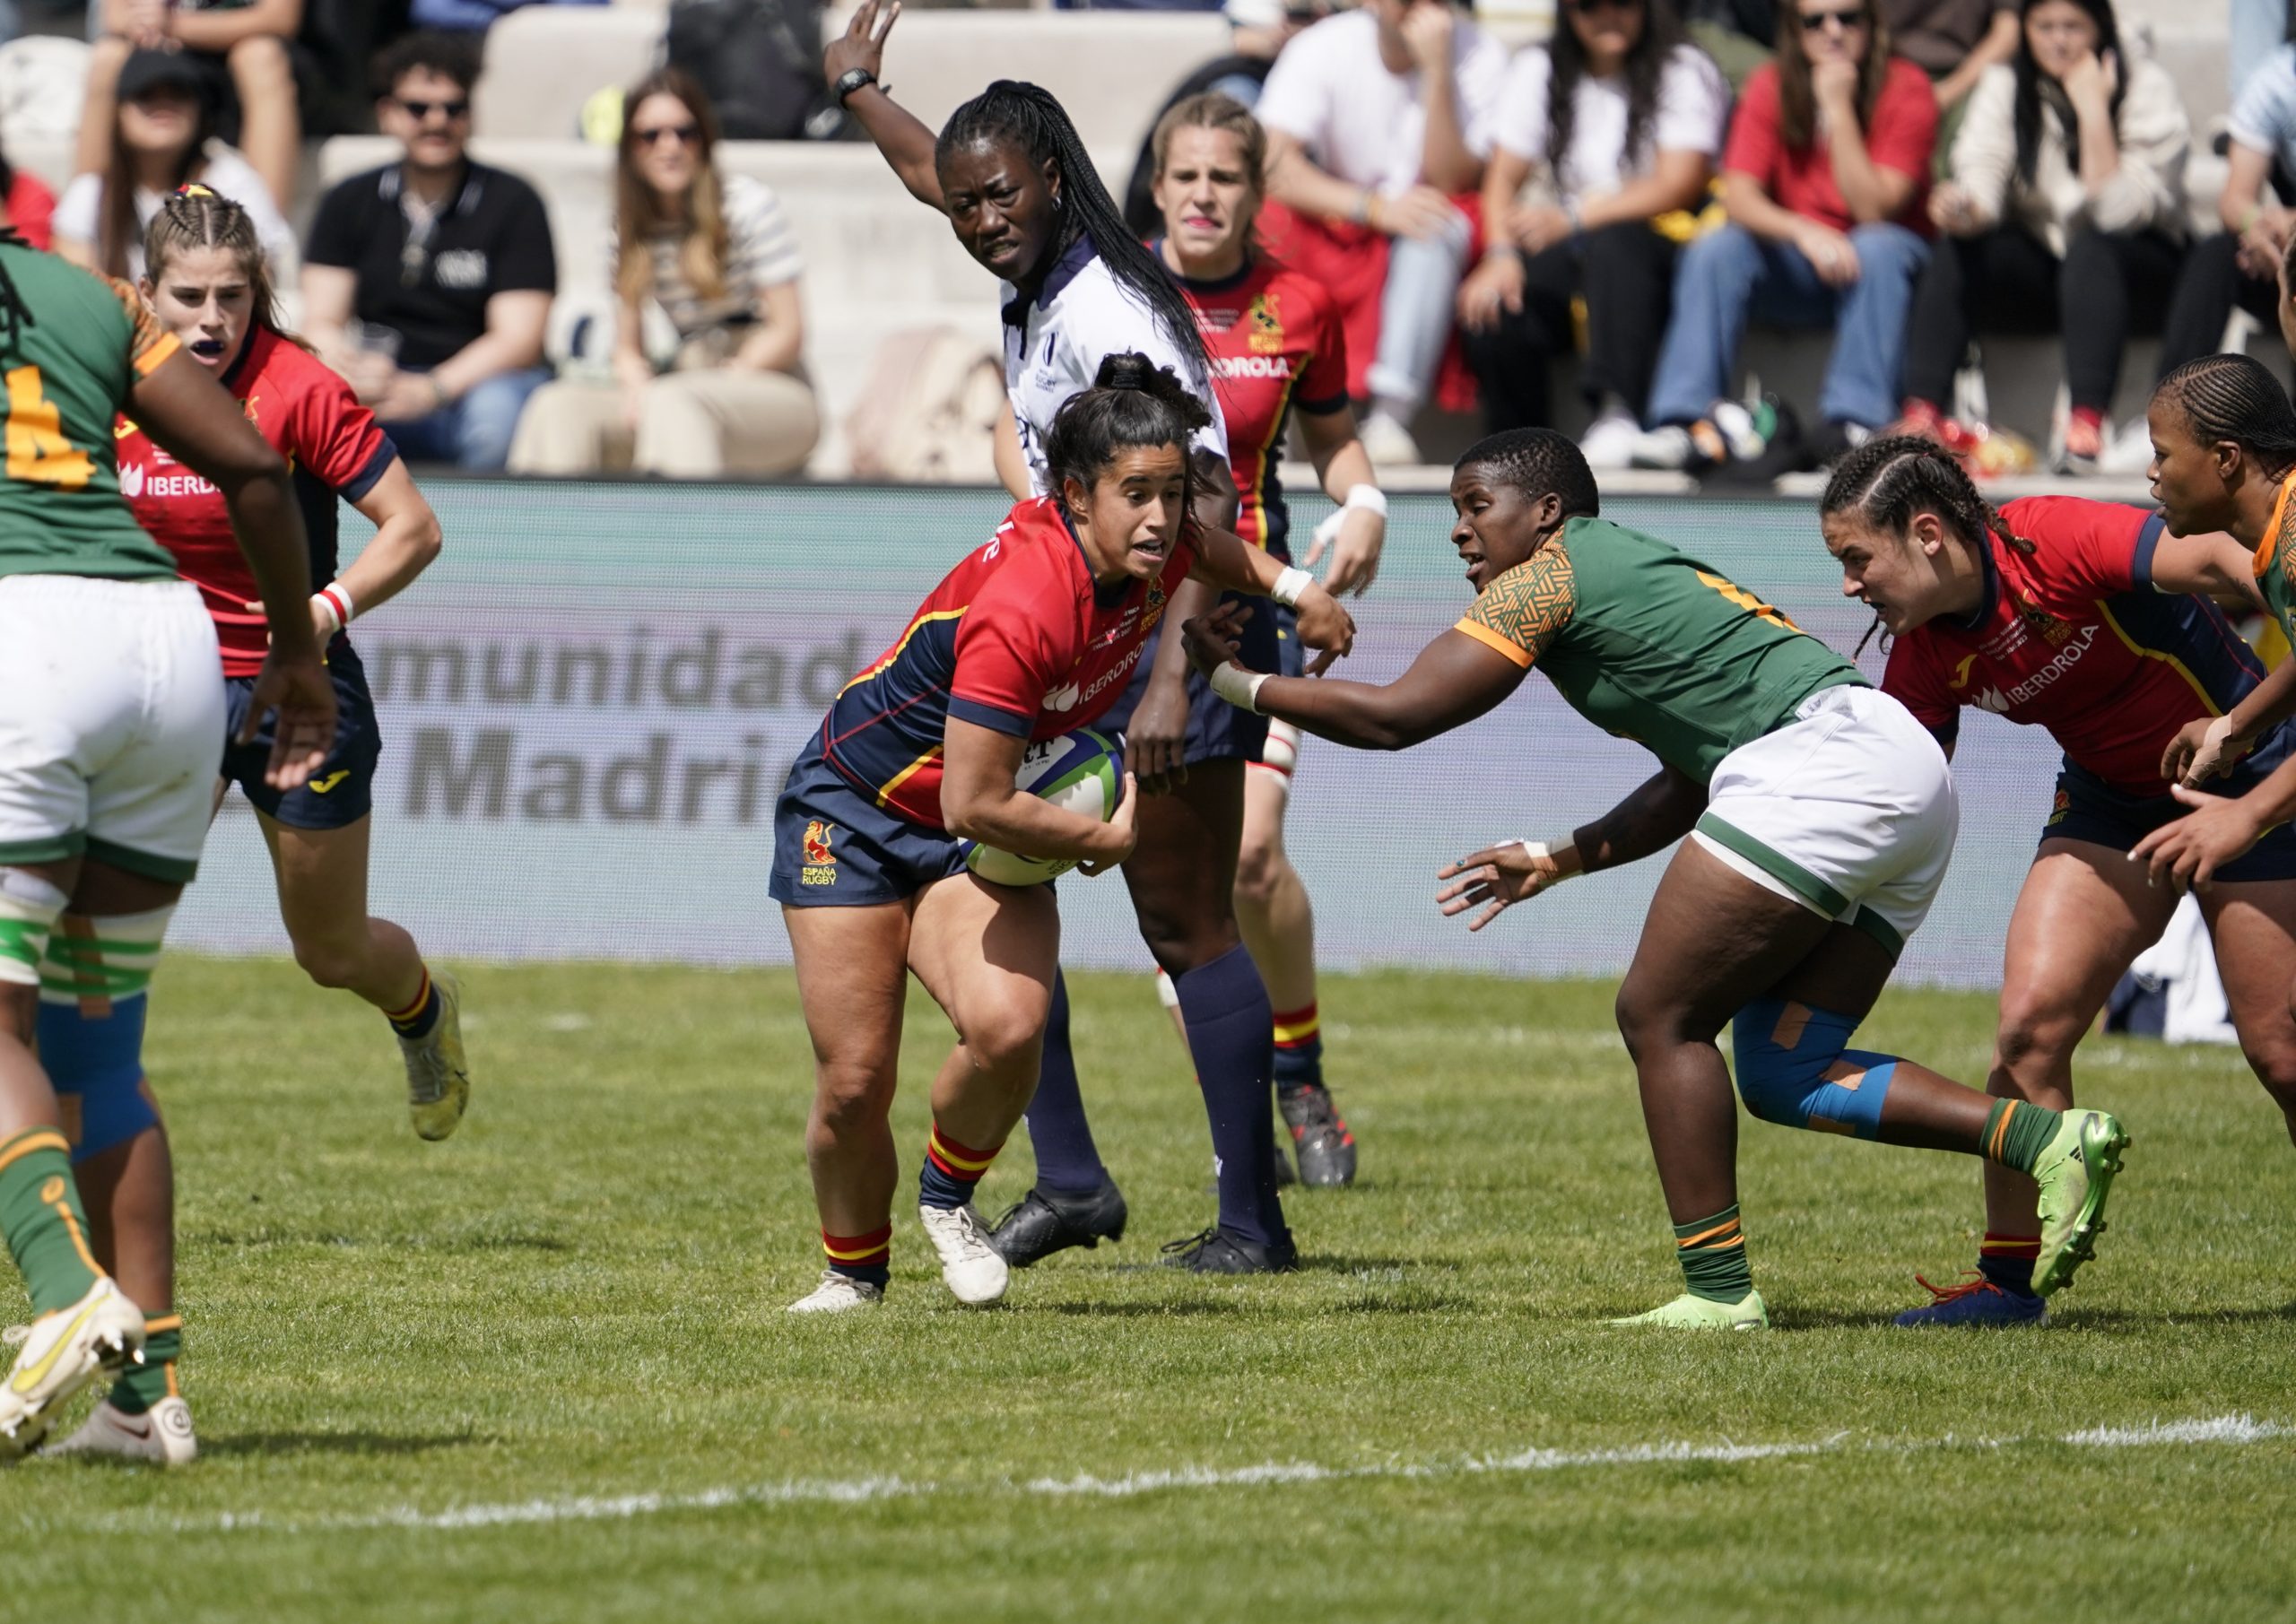 World Rugby confirma Dubái como sede del WXV3… a la que España espera no ir